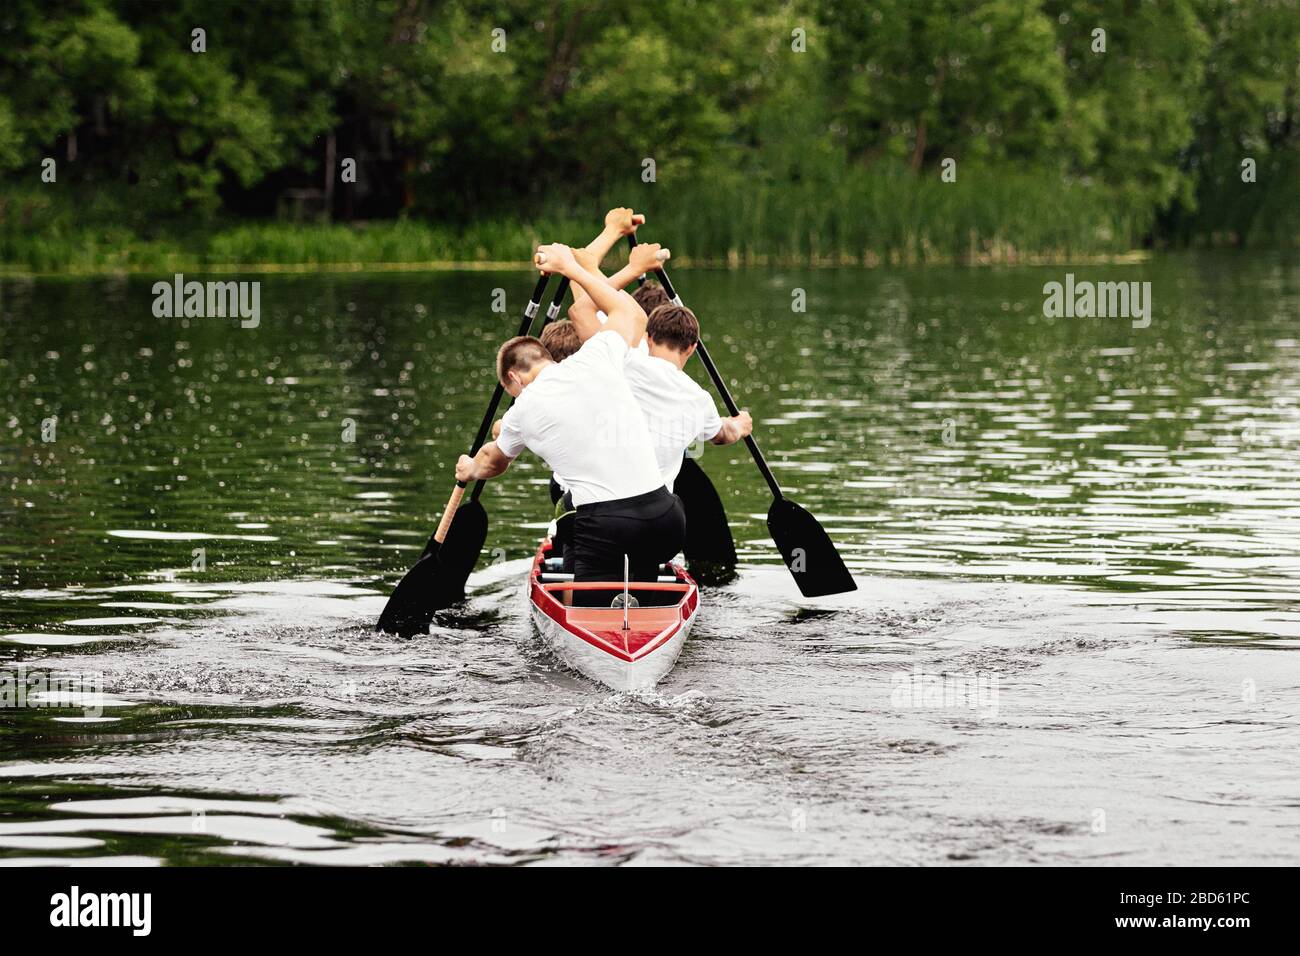 back four athletes canoeist paddling in canoe on lake Stock Photo